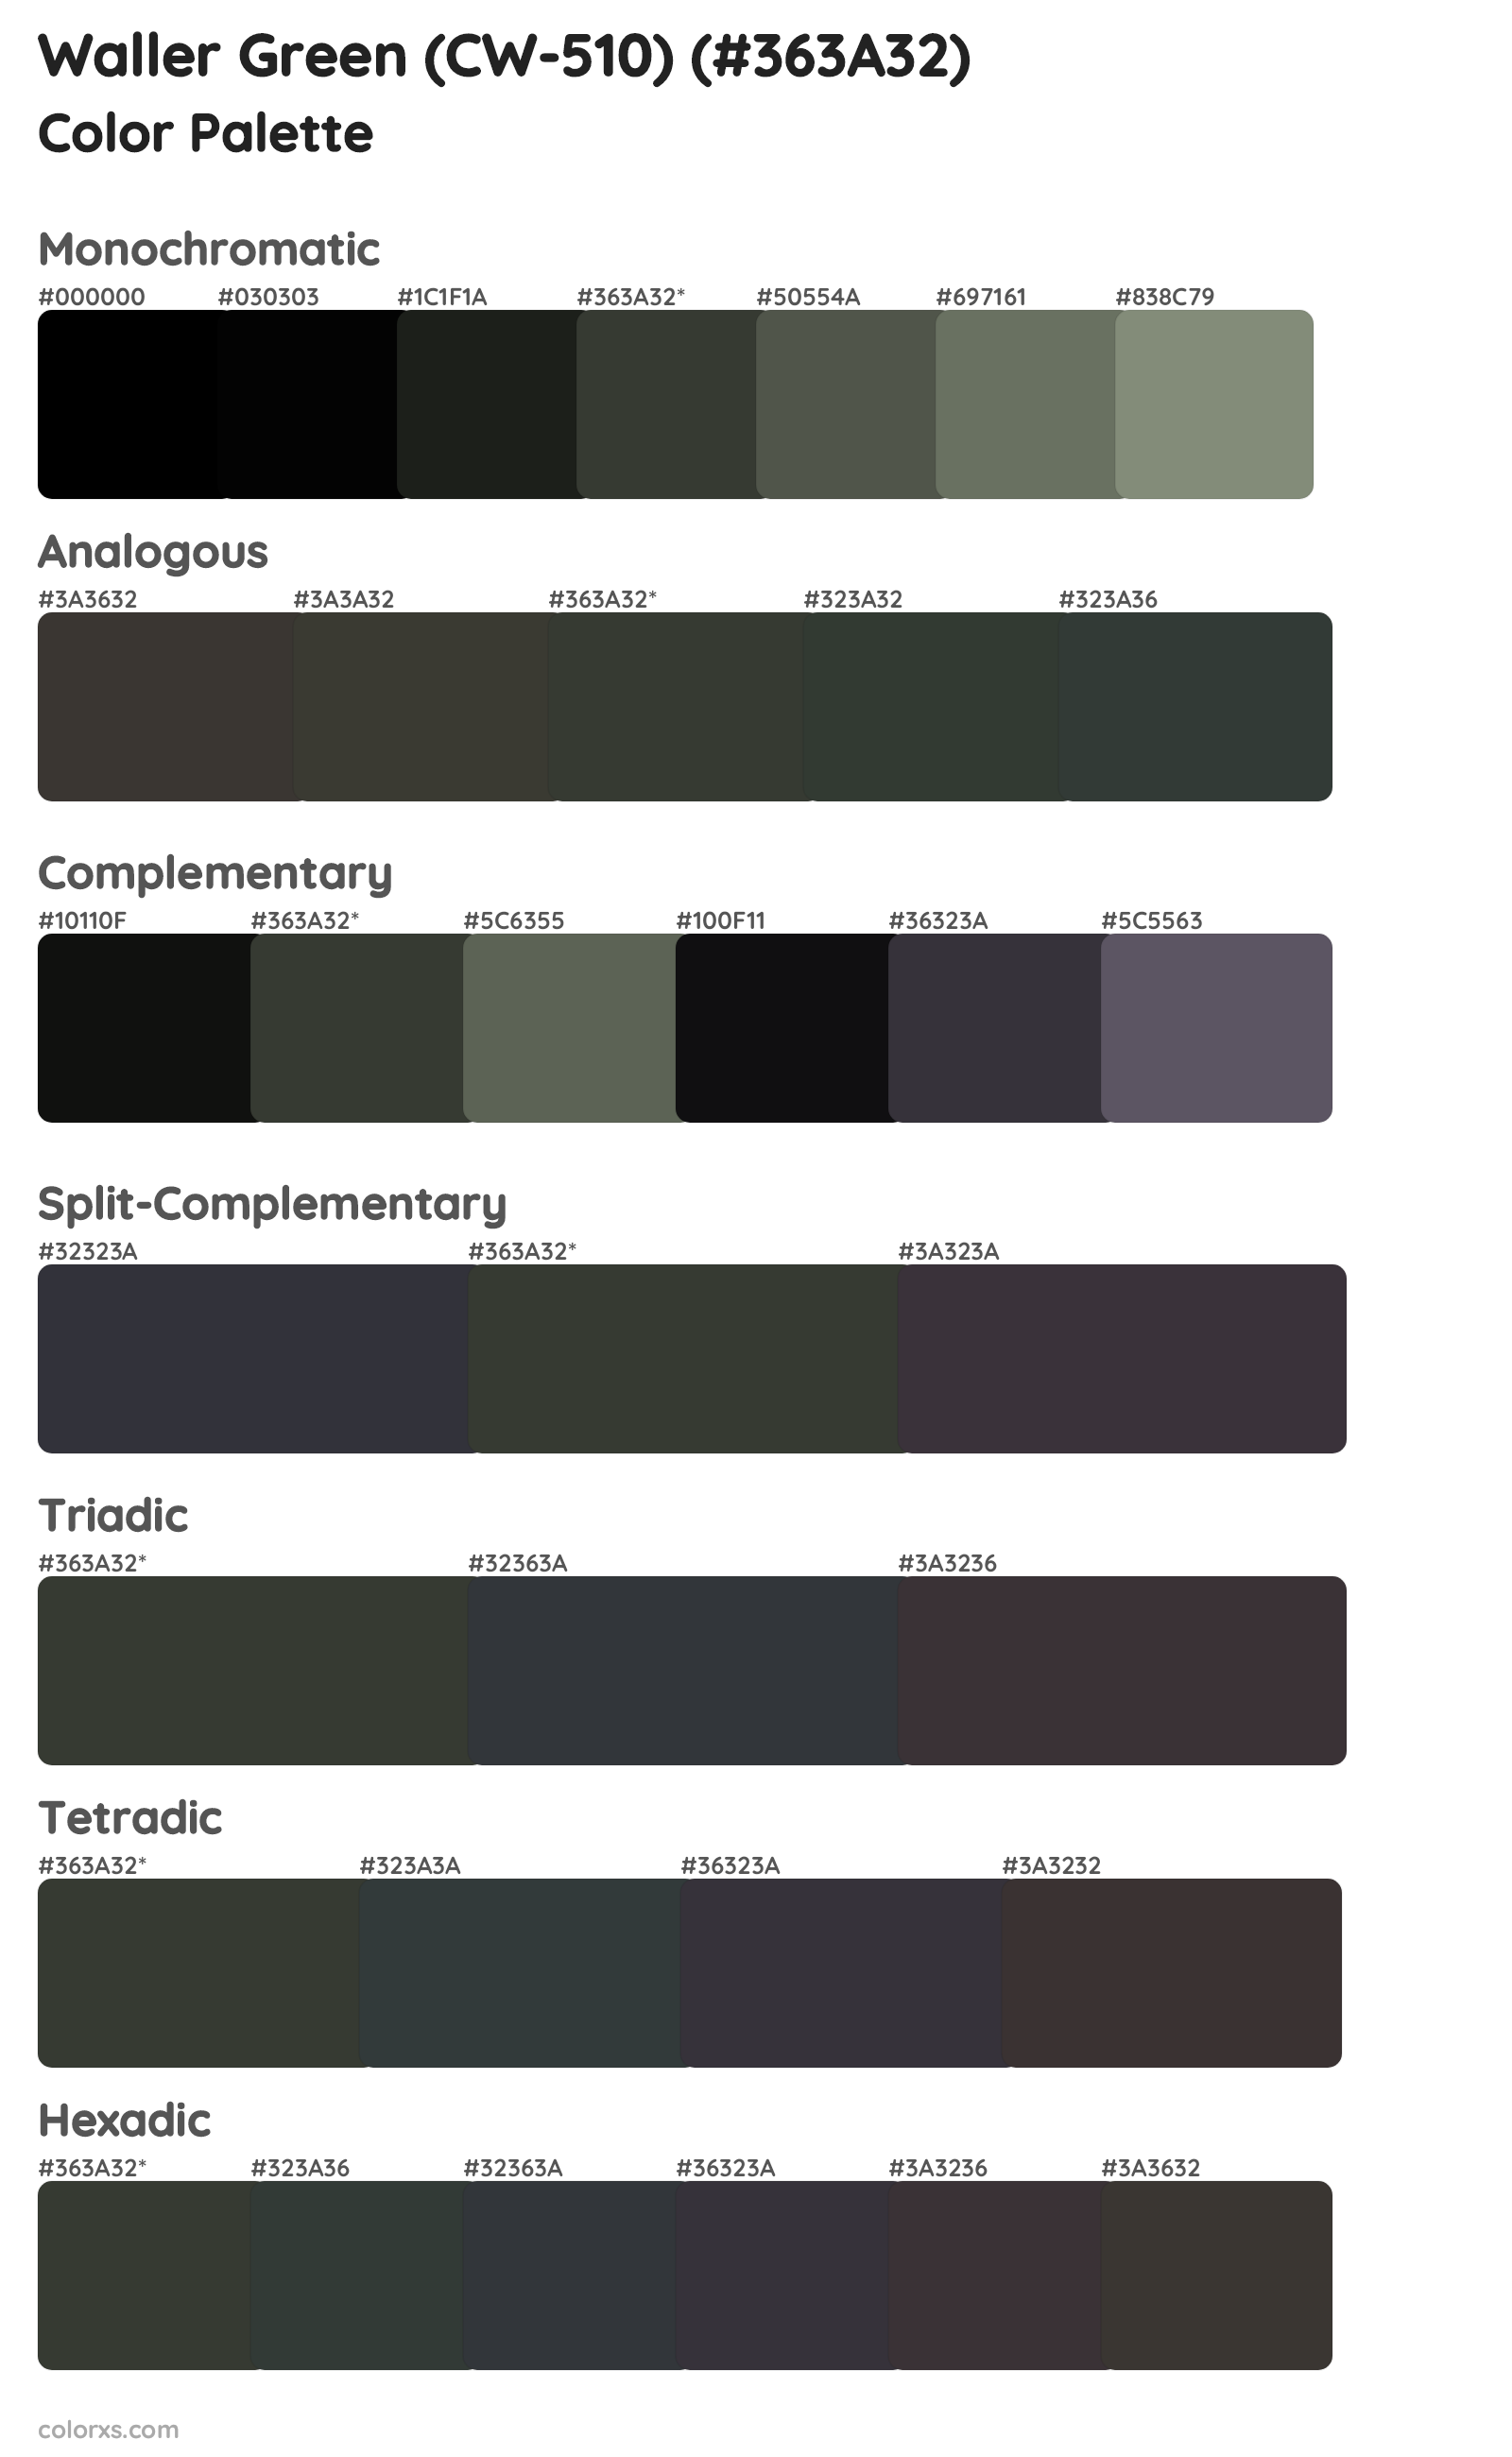 Waller Green (CW-510) Color Scheme Palettes